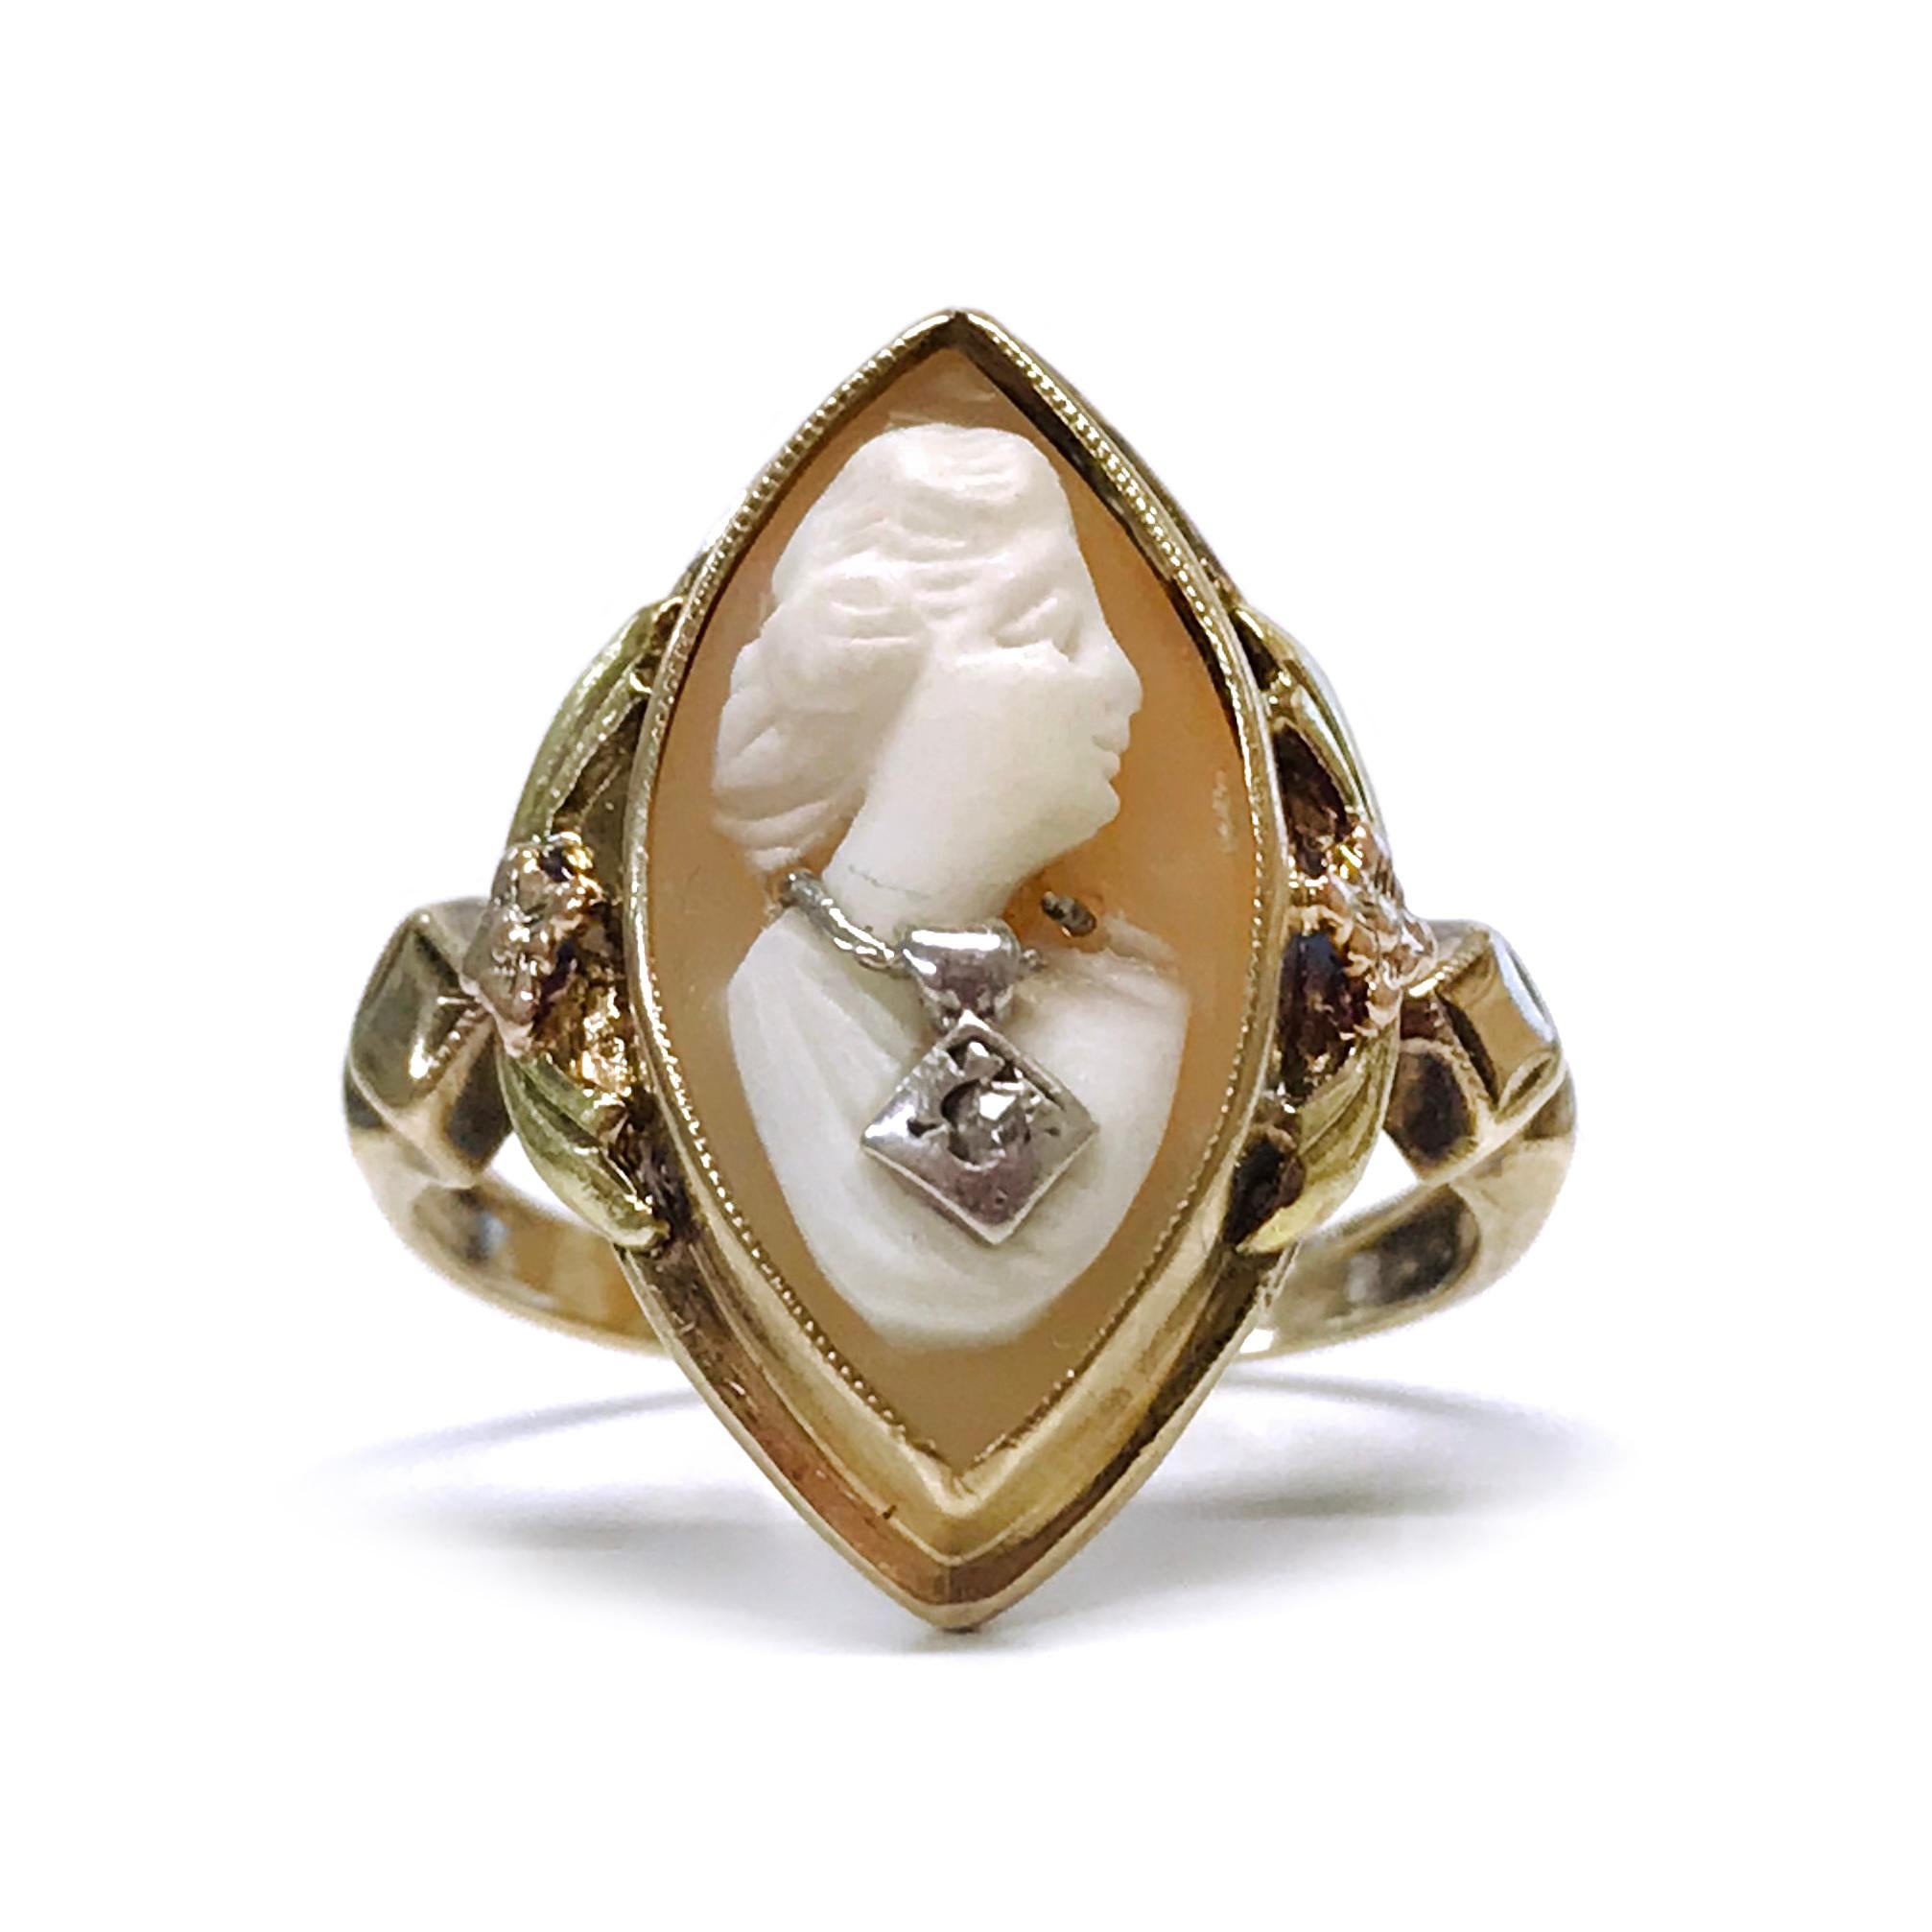 Art Deco 10 Karat dreifarbiger Diamantring aus Gelb-, Rosé- und Weißgold mit Kamee. Der navettenförmige Ring ist mit einer Kamee in der Lünette besetzt. Die geschnitzte Muschelkamee zeigt das Profil einer Frau, die eine Weißgoldkette trägt. Die